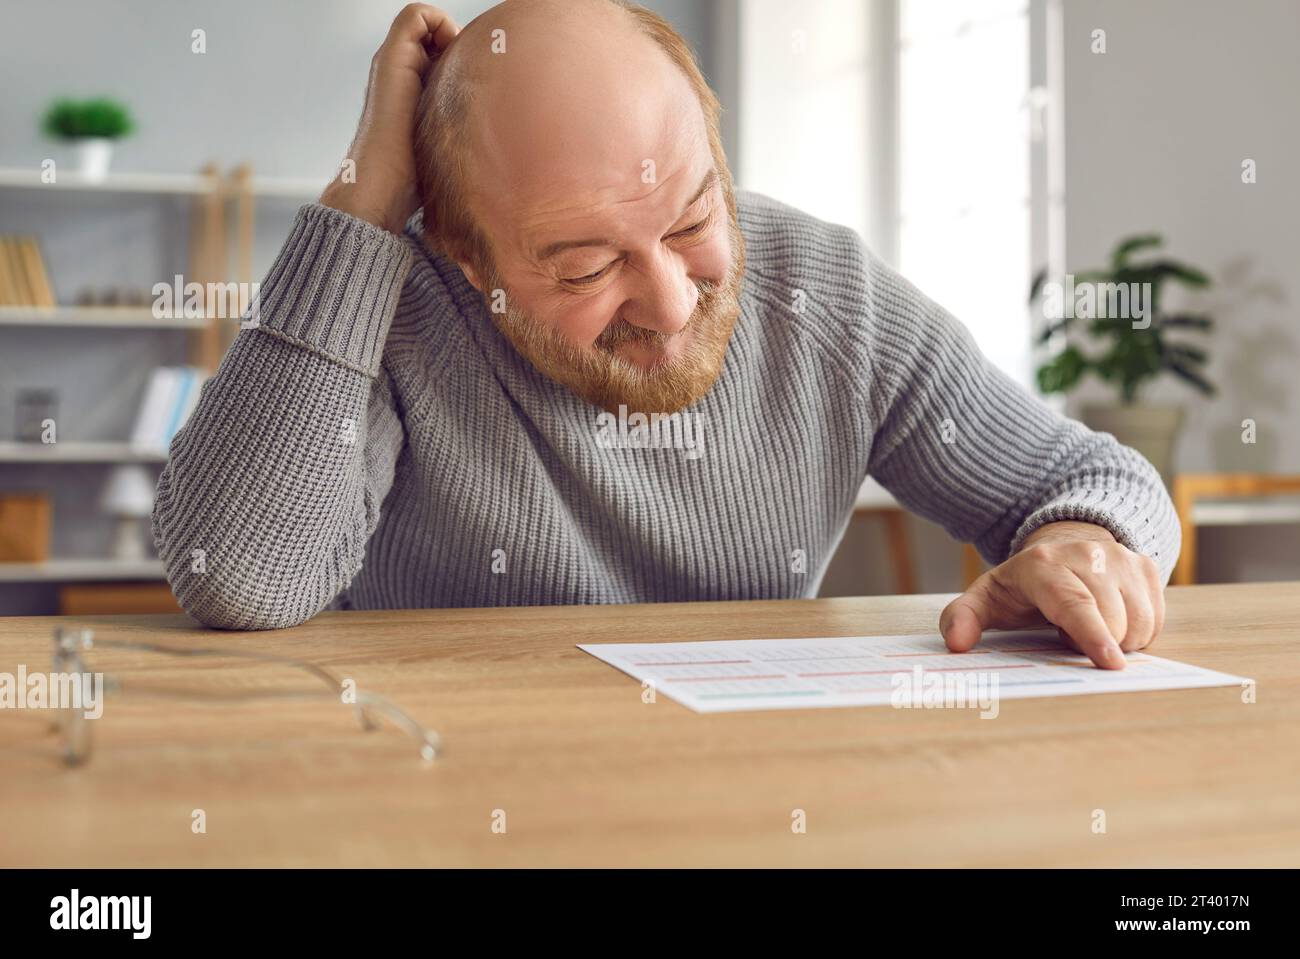 Ein älterer Mann mit Alzheimer-Krankheit wird verwirrt, wenn er sich den Kalender auf dem Tisch ansieht Stockfoto